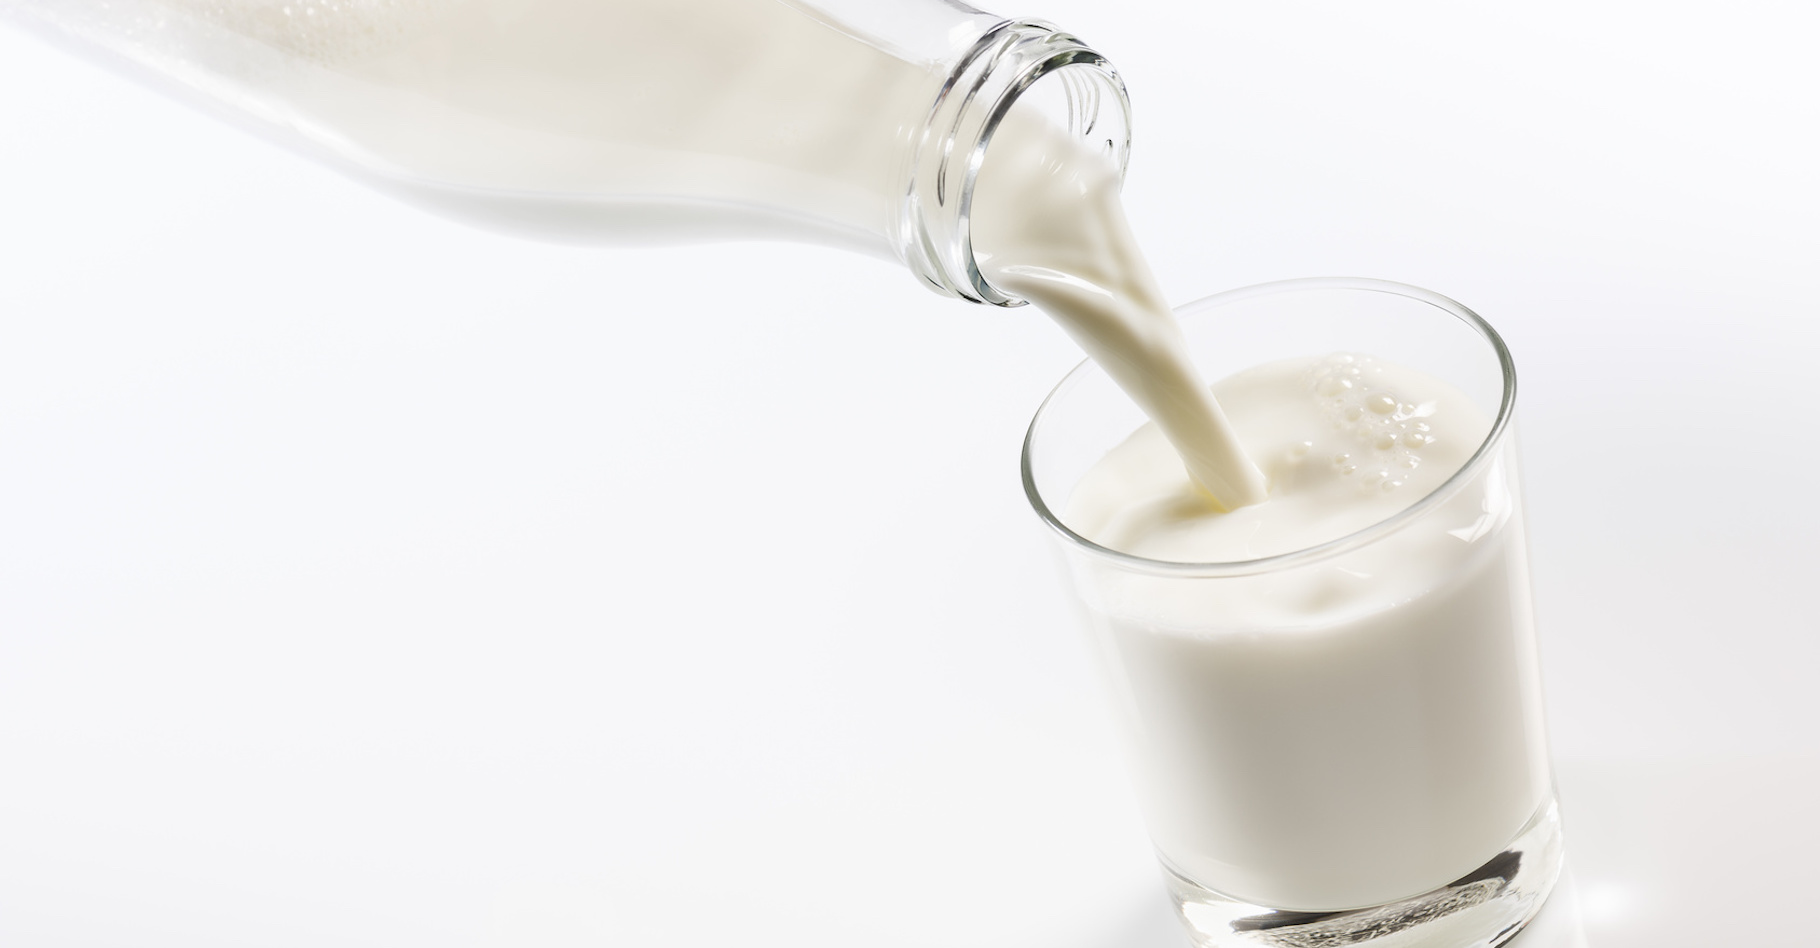 Le lait de vache, un lait animal, reste la nourriture exclusivement des nourrissons. © winston, Fotolia